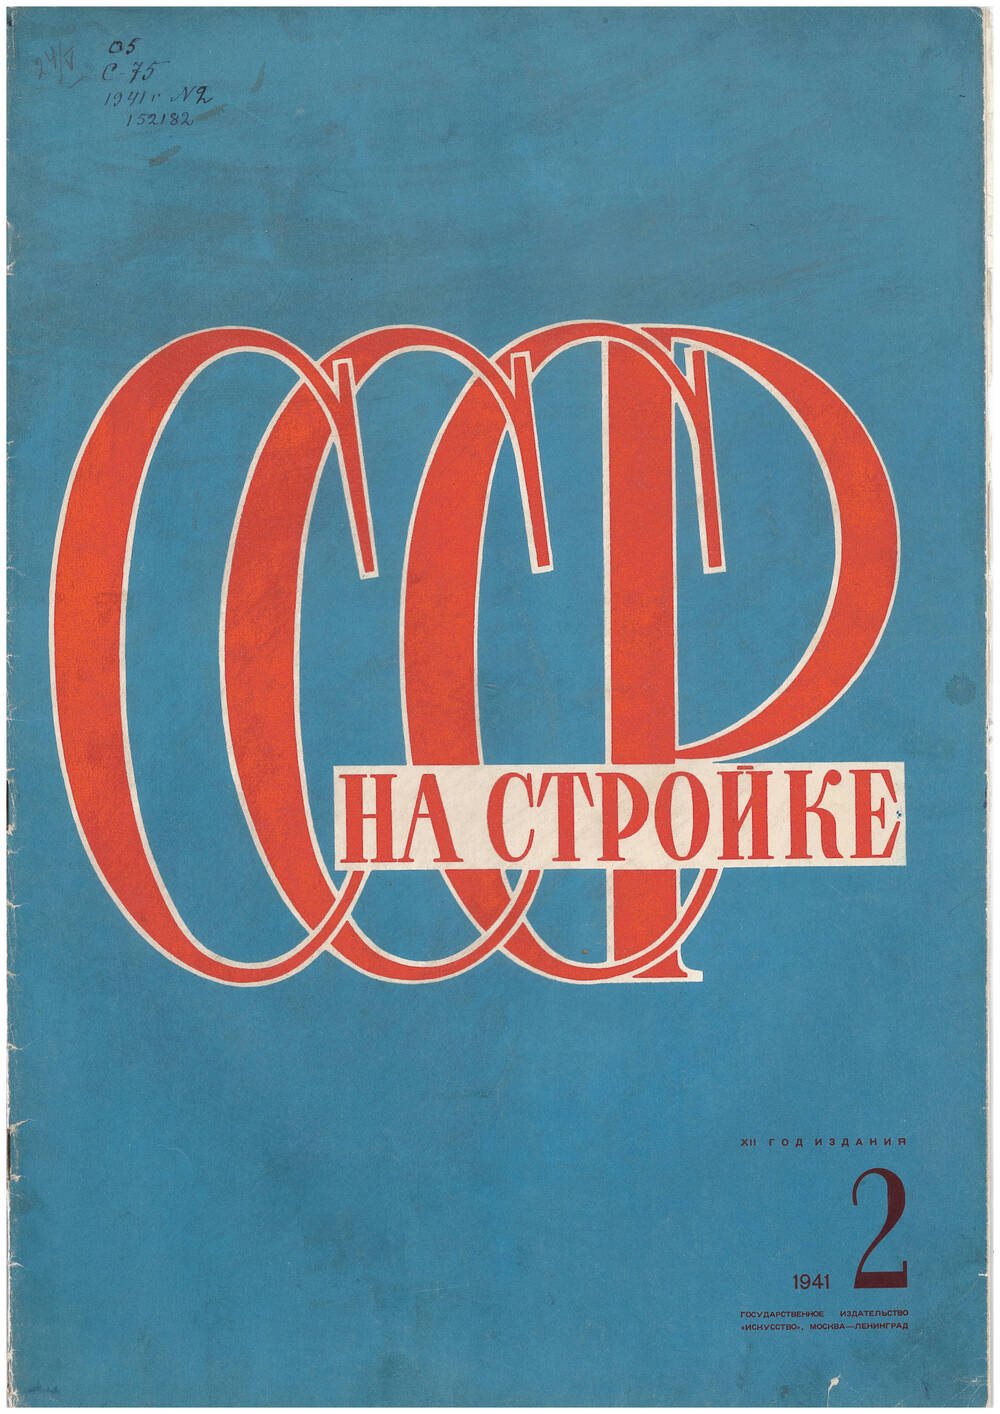 Ежемесячный иллюстрированный журнал СССР на стройке ¦ 2 1941 г.